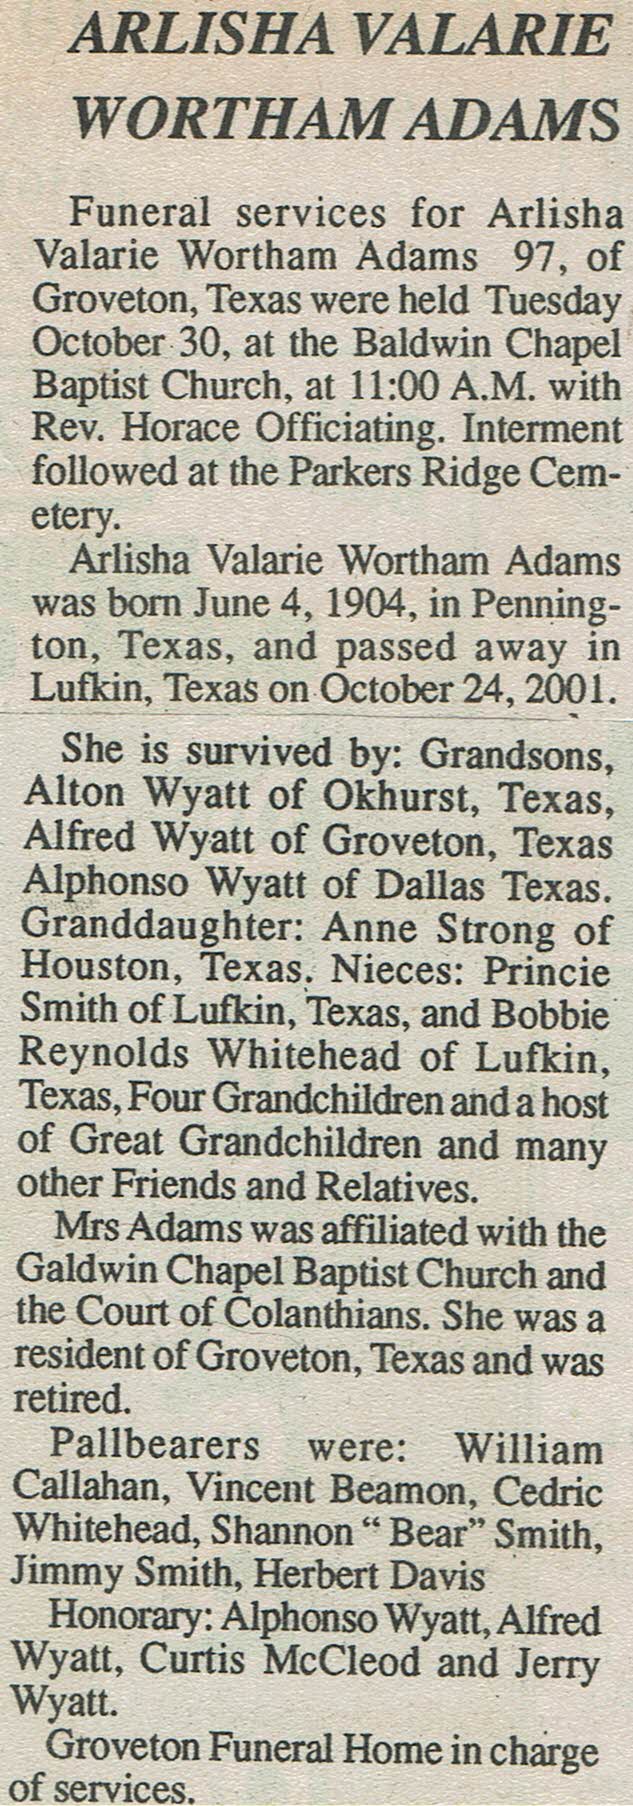 Obituary  Vernon Billy Willis Carlton, Jr. of Groveton, Texas